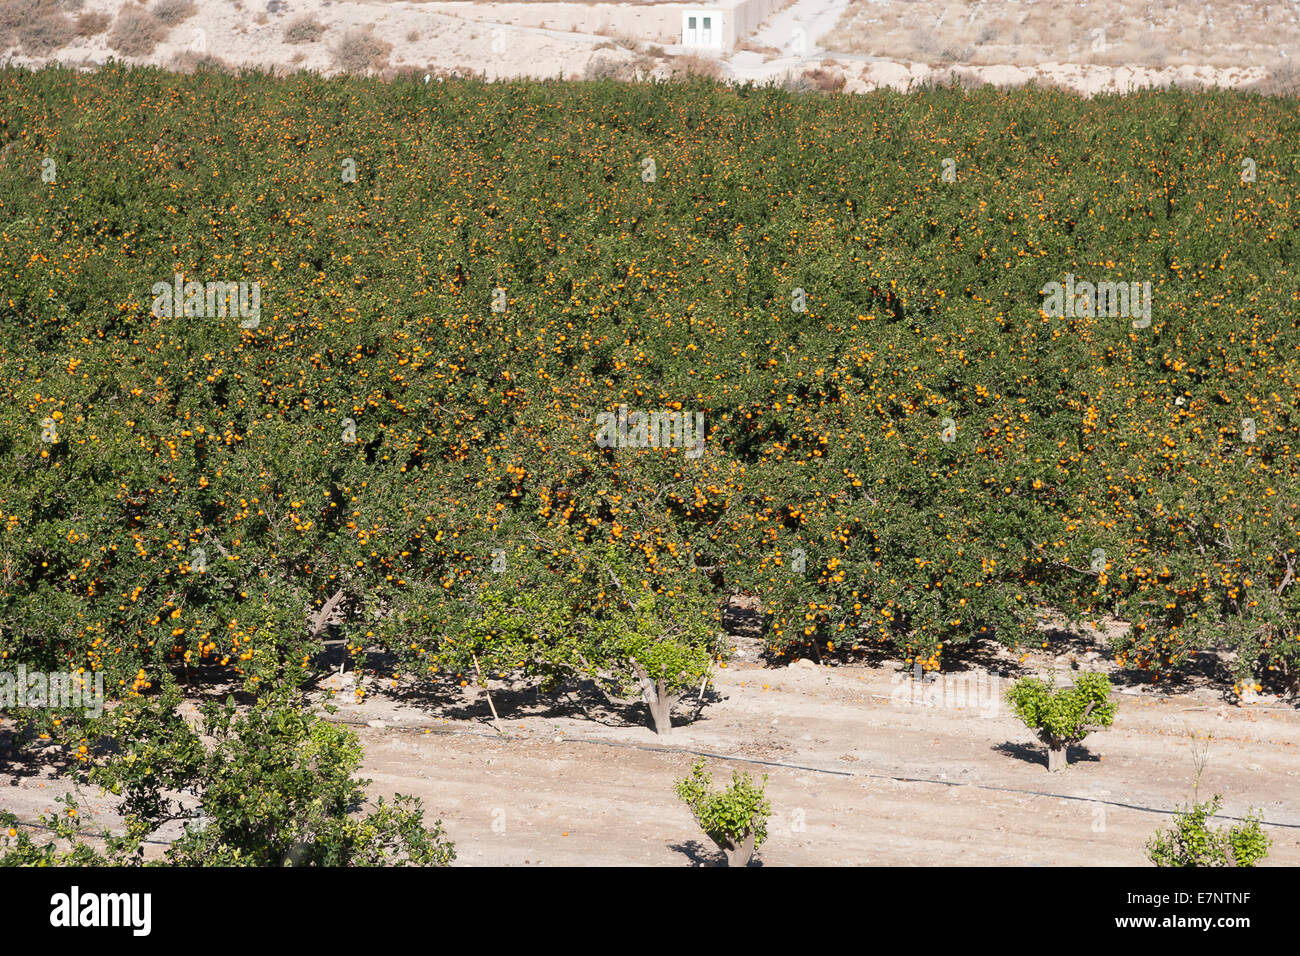 Spanish landscape Stock Photo